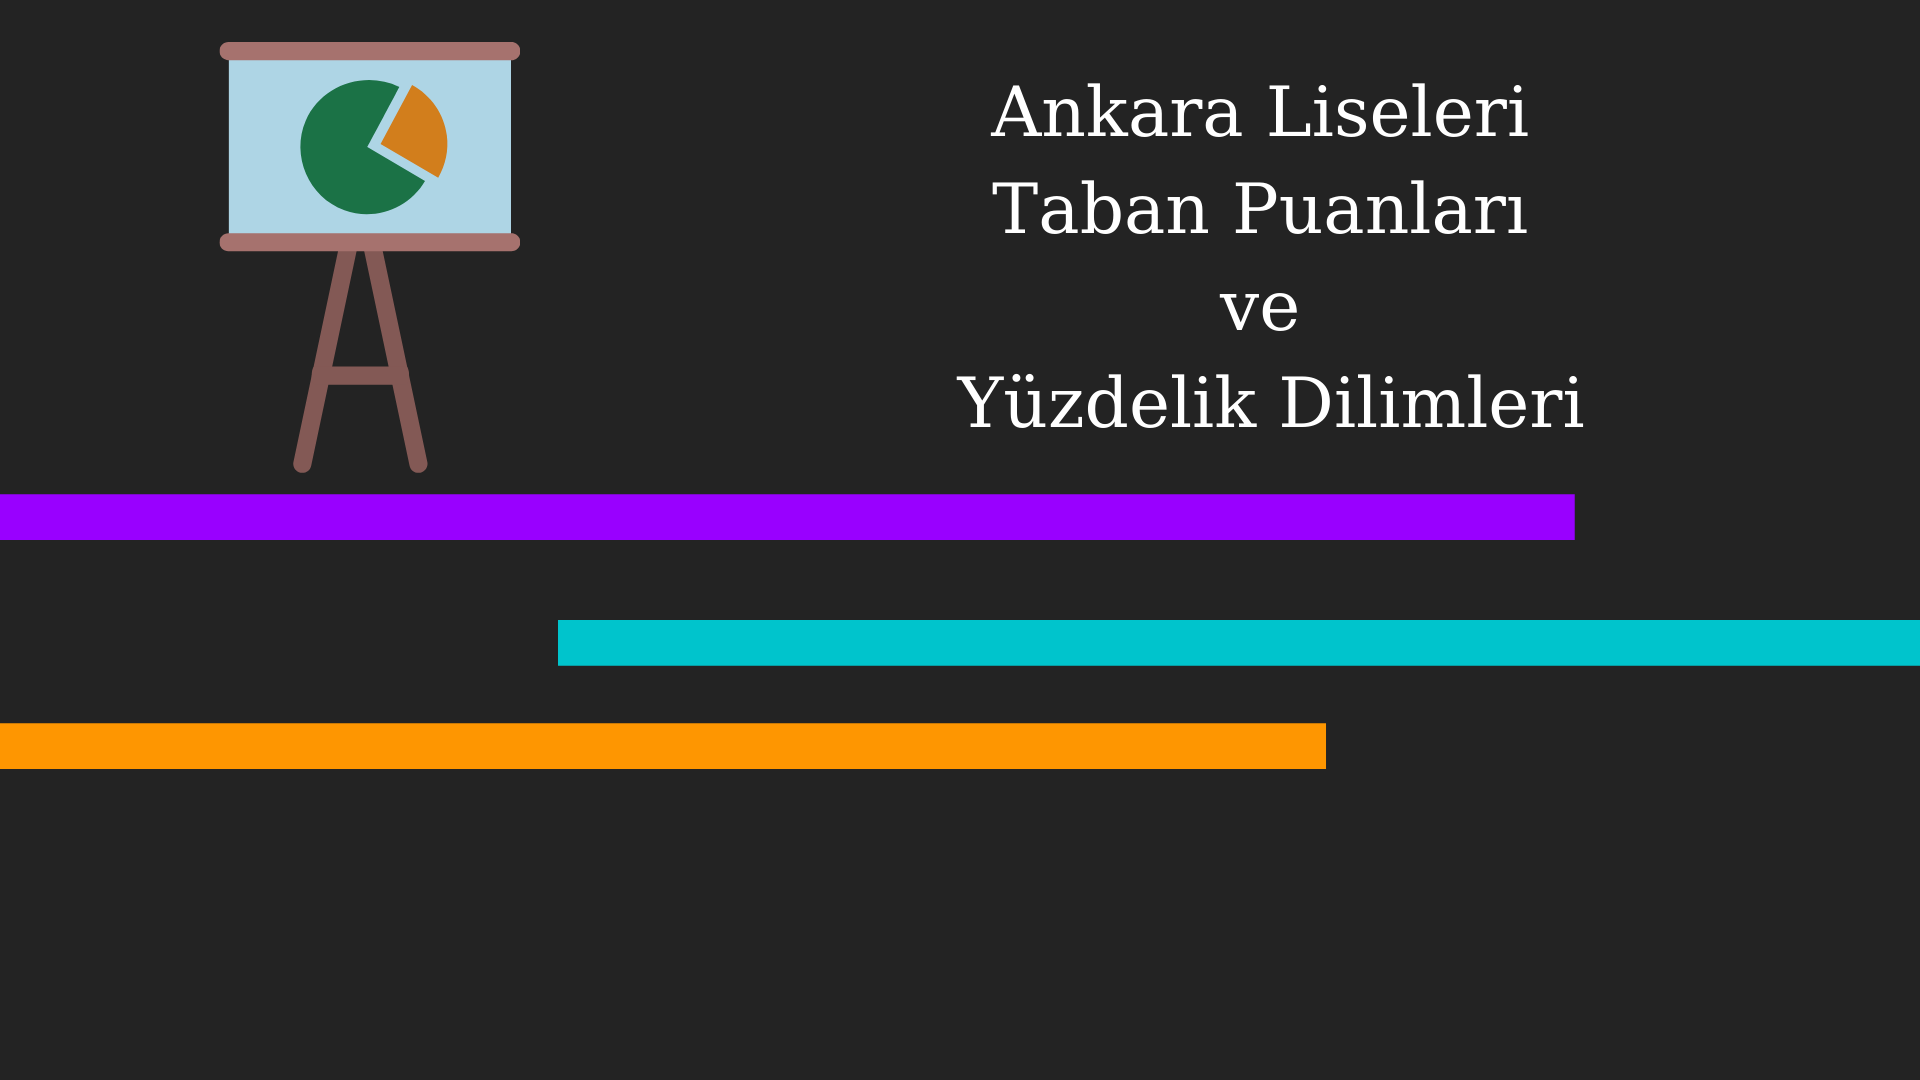 Ankara Liseleri Taban Puanları ve Yüzdelik Dilimleri 2021